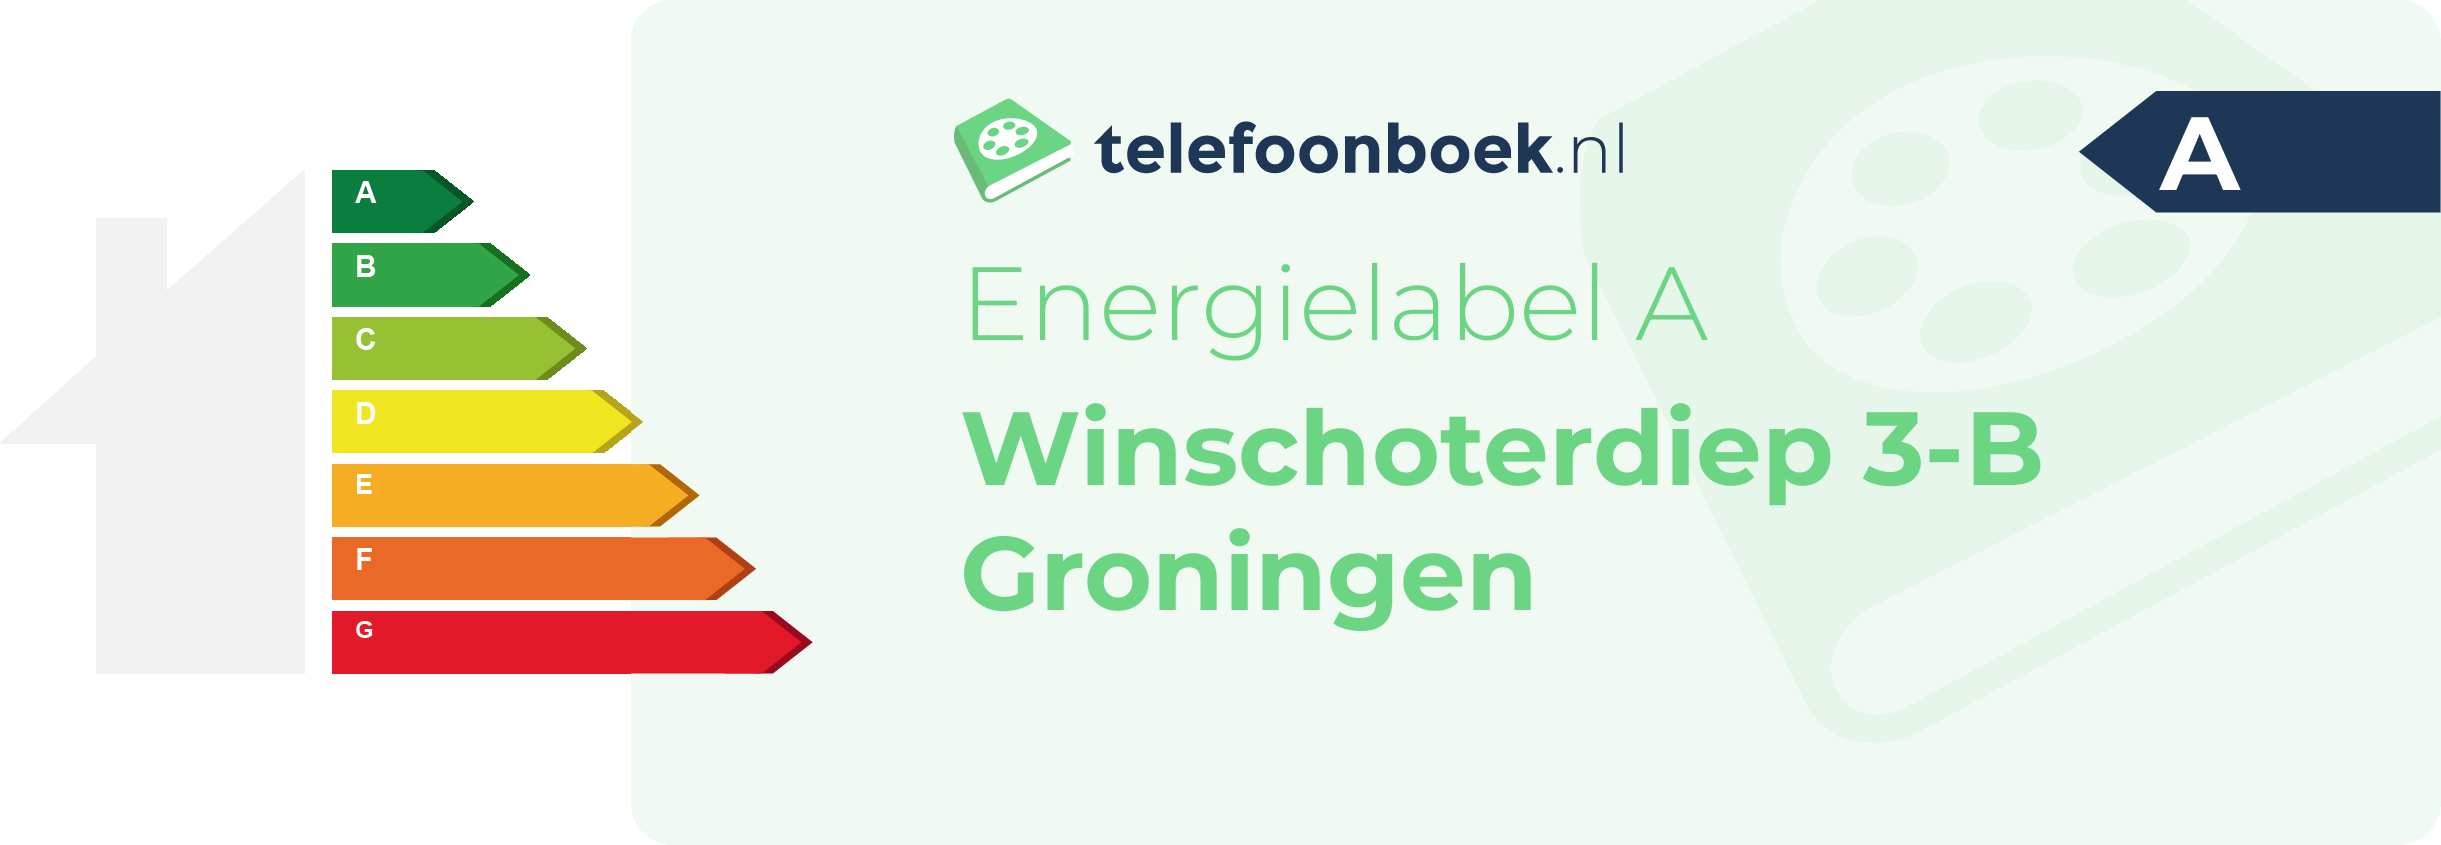 Energielabel Winschoterdiep 3-B Groningen